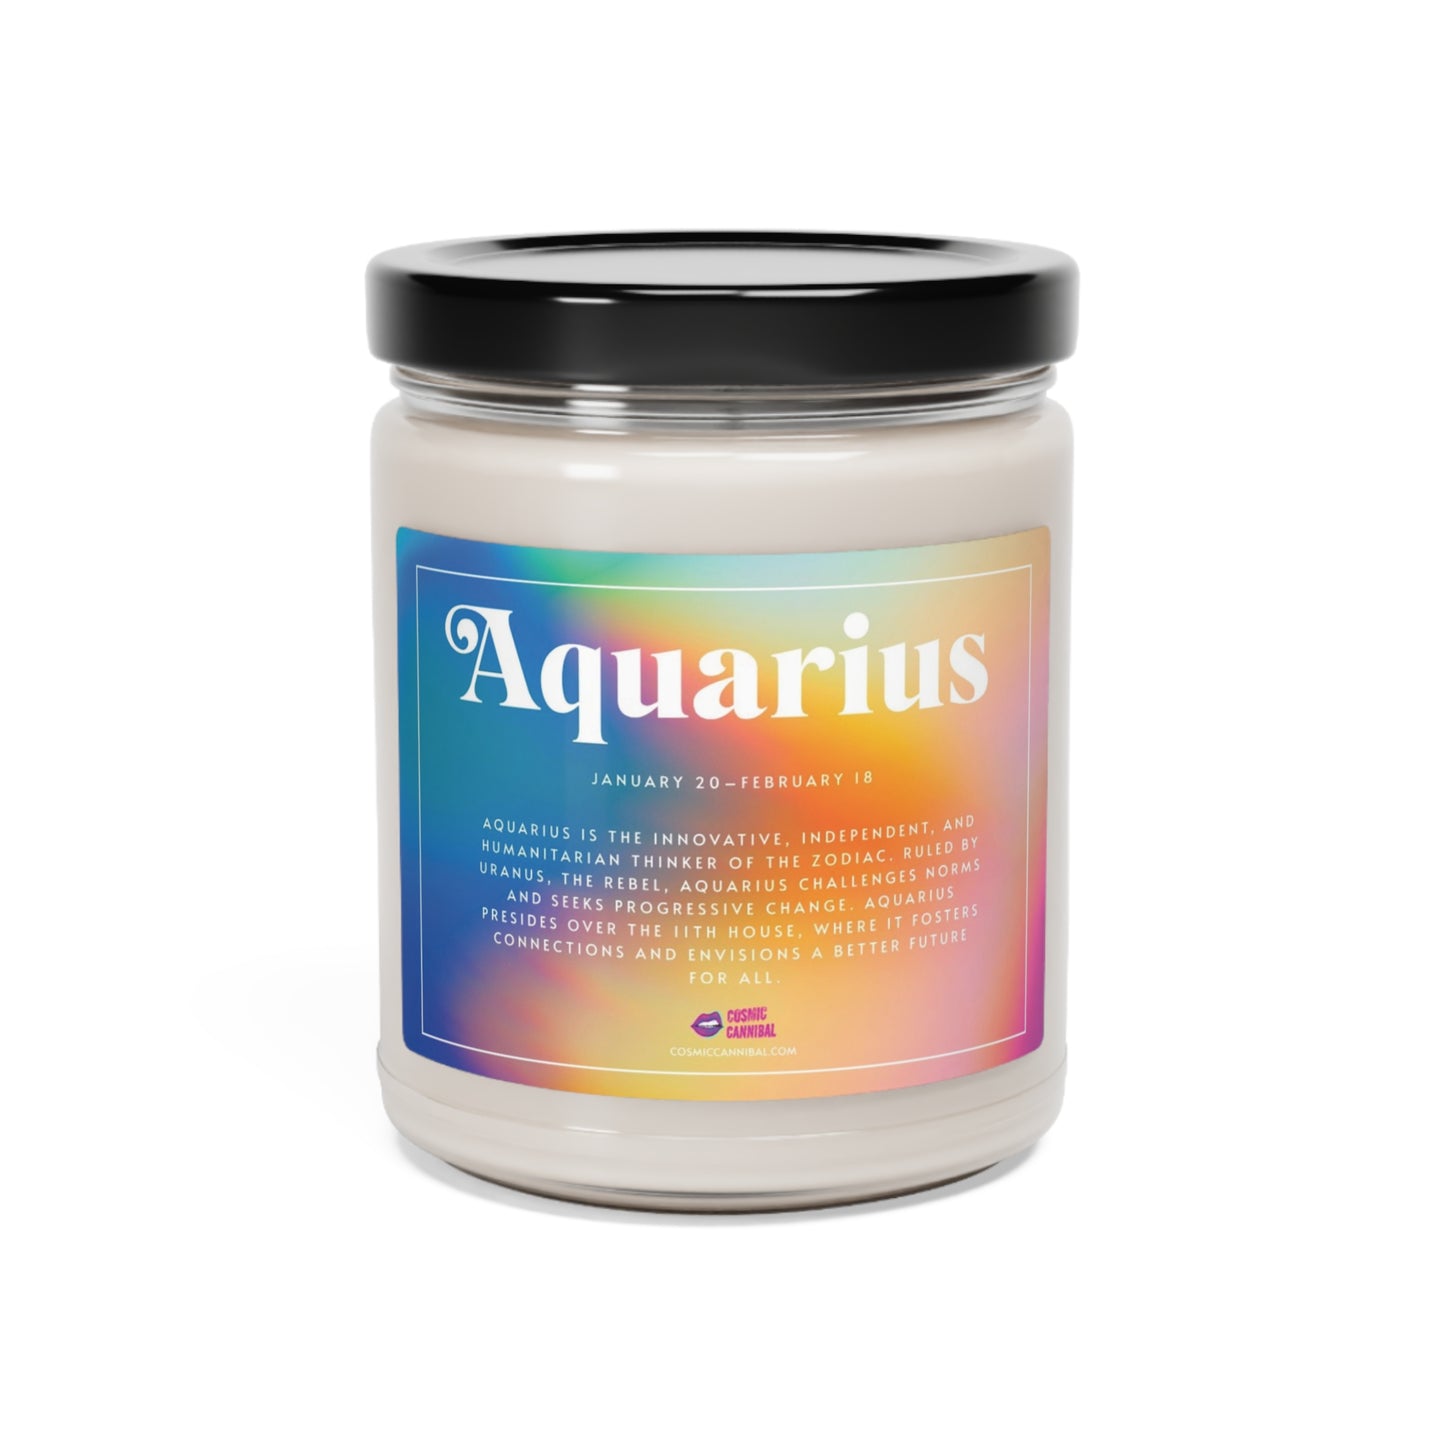 The Aquarius Candle